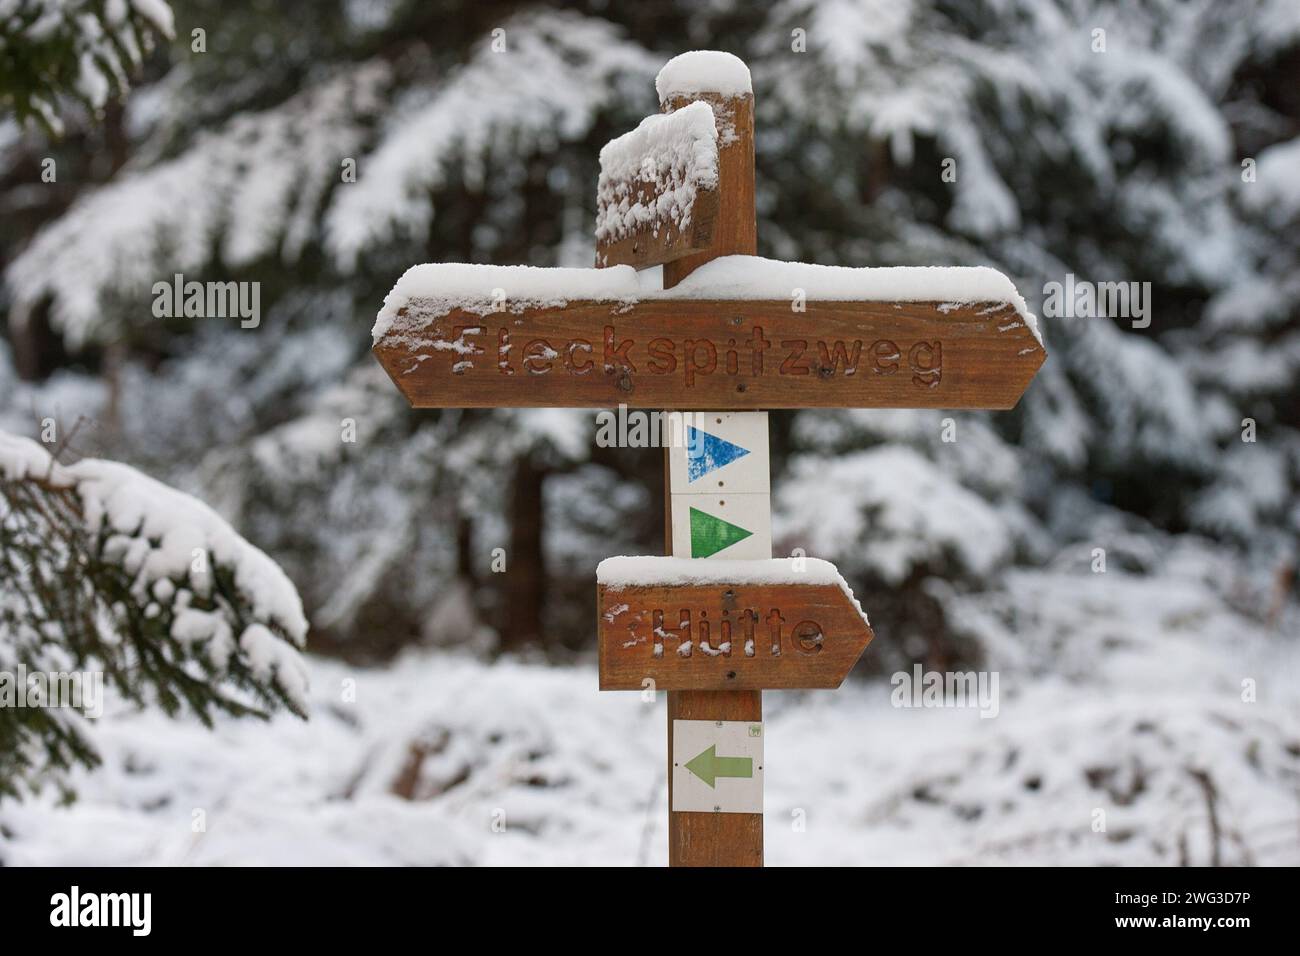 Im verschneiten Wald zeigt ein hölzerner, schneebedeckter Wegweiser mit den Aufschriften „Hütte“ und „Fleckenspitzweg“ Wanderern den richtigen Weg. Das Bild strahlt aus Stockfoto